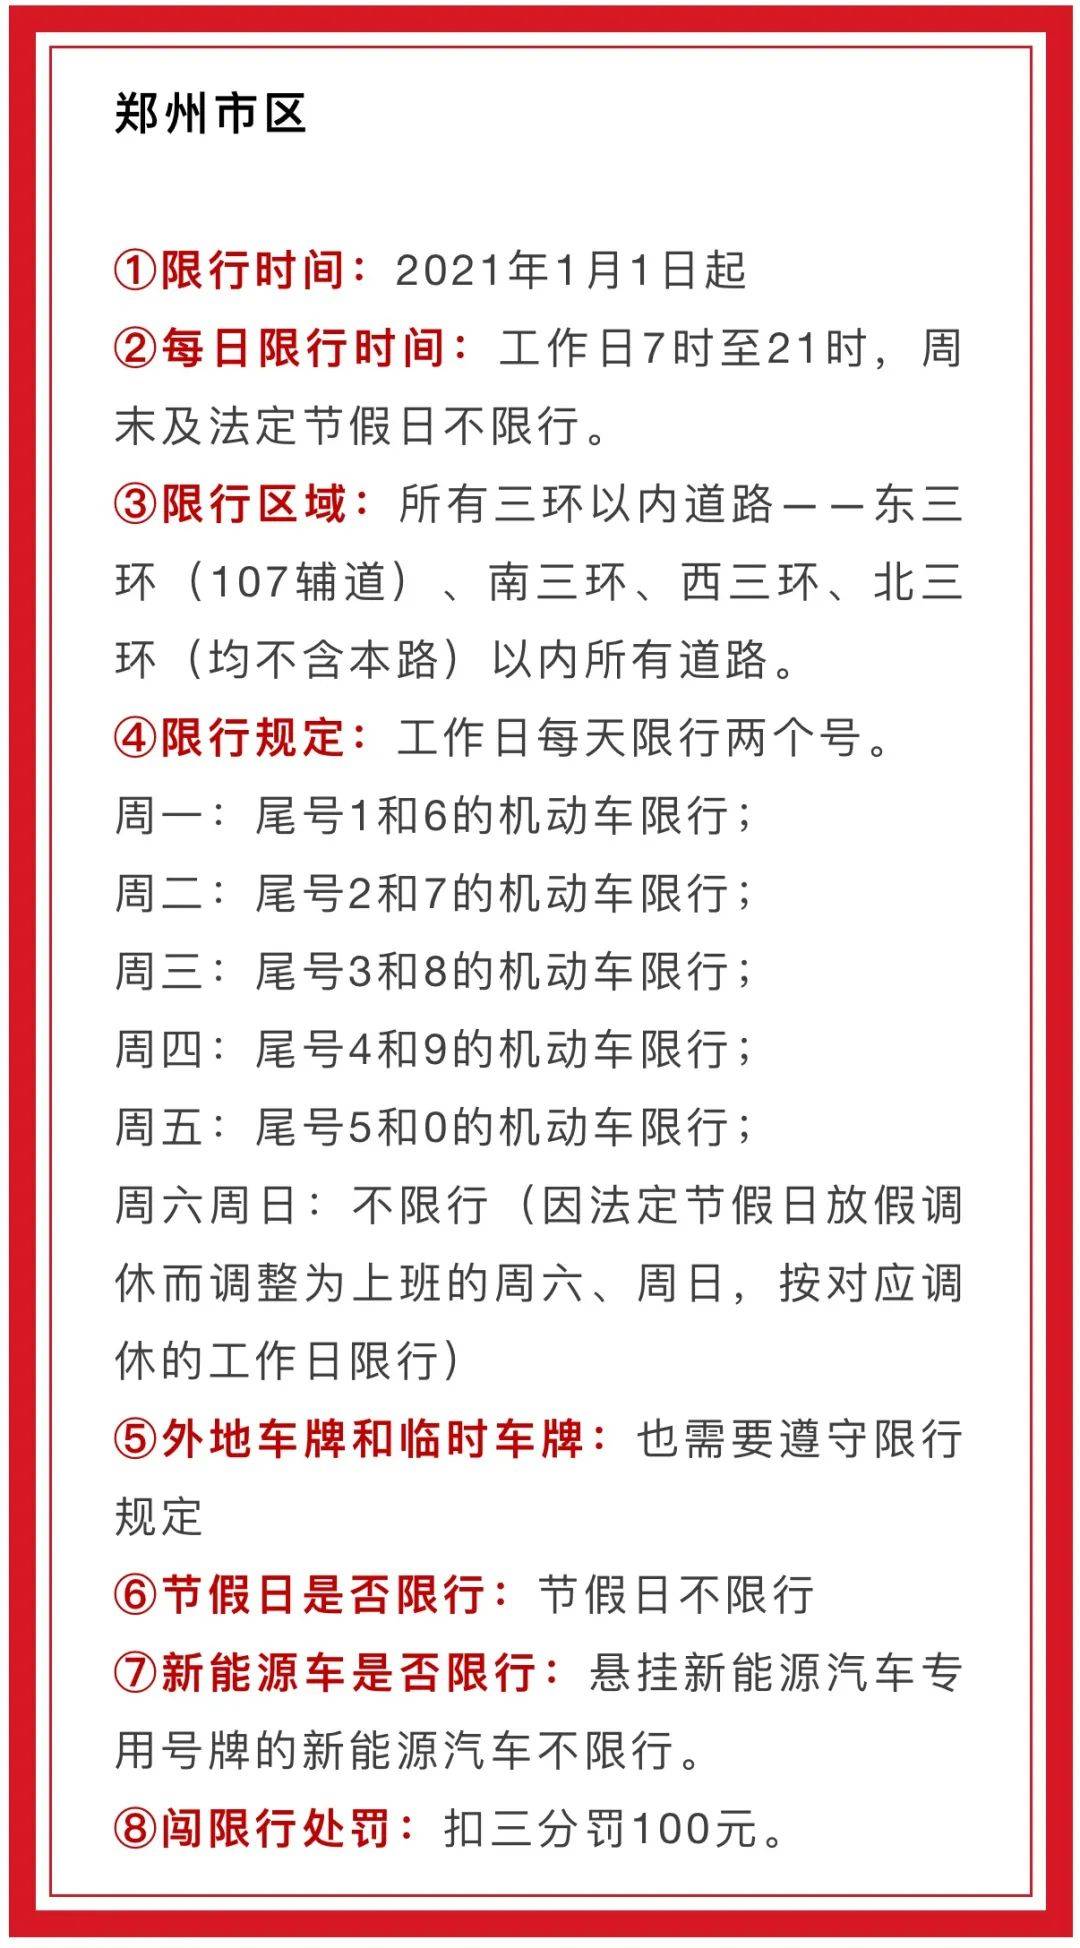 今天就是 2021第一个工作日了 各位打工人请注意 除了郑州市区 郑州